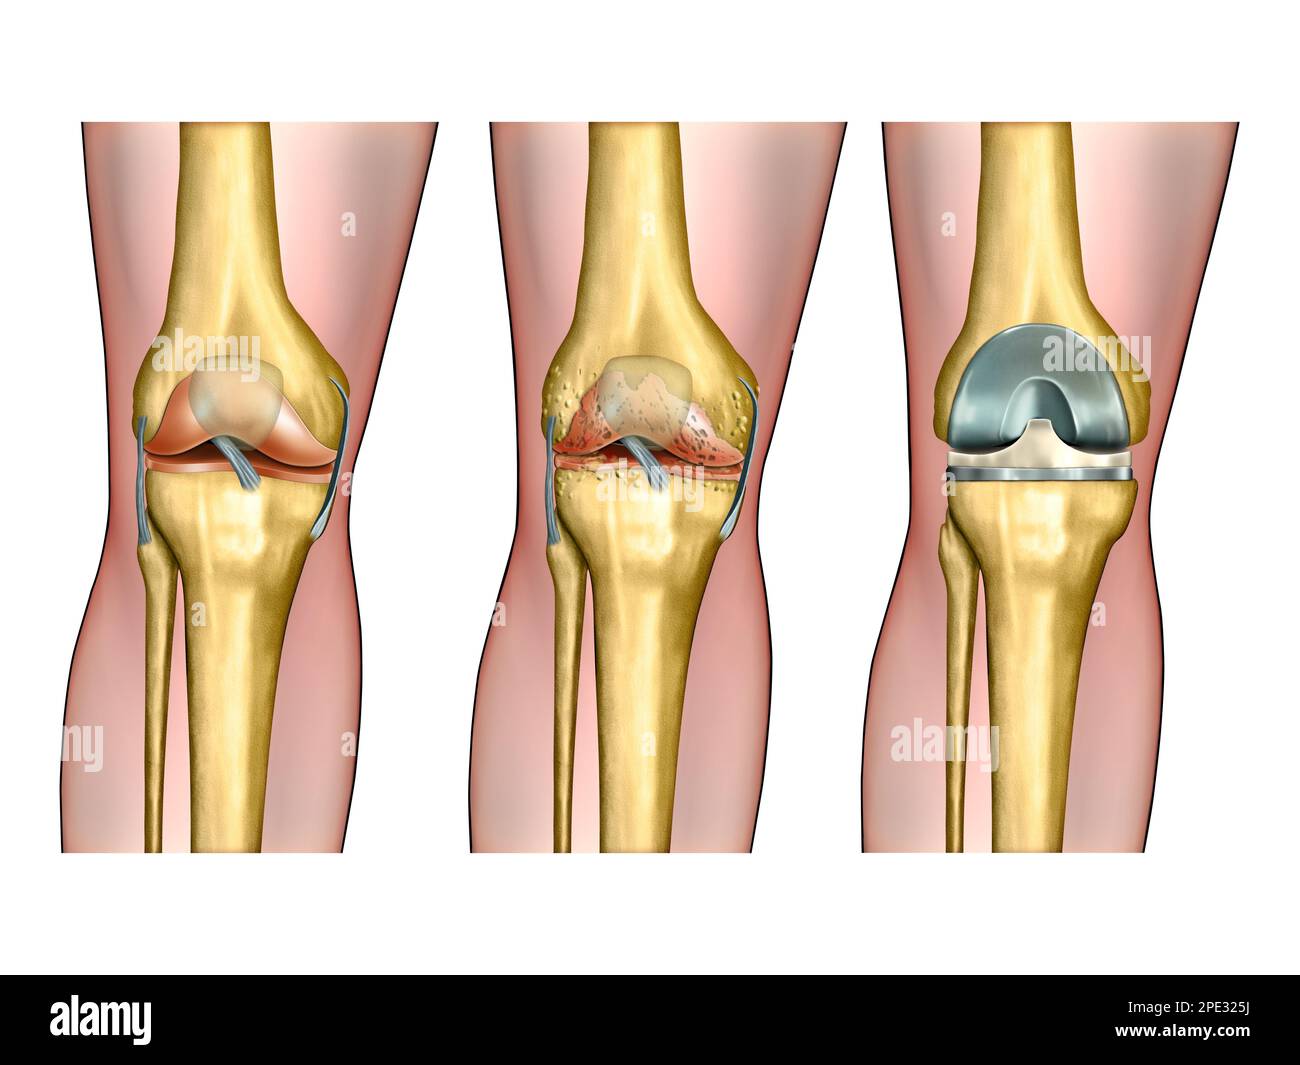 Anatomia sana del ginocchio, artrite degenerativa del ginocchio e chirurgia sostitutiva. Illustrazione digitale. Foto Stock